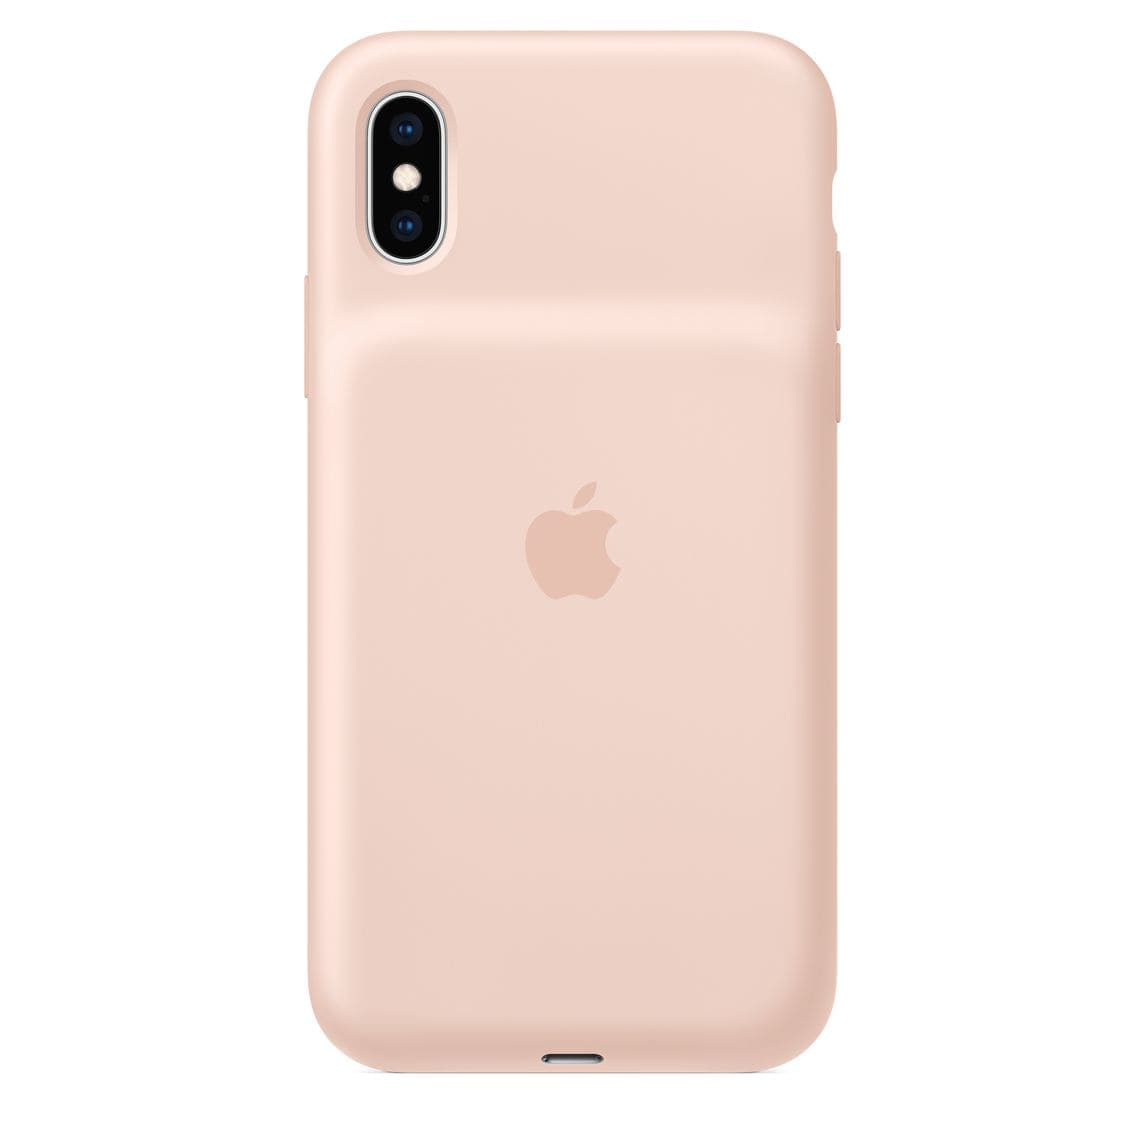 Фото — Чехол для смартфона Smart Battery Case для iPhone XS, «розовый песок»